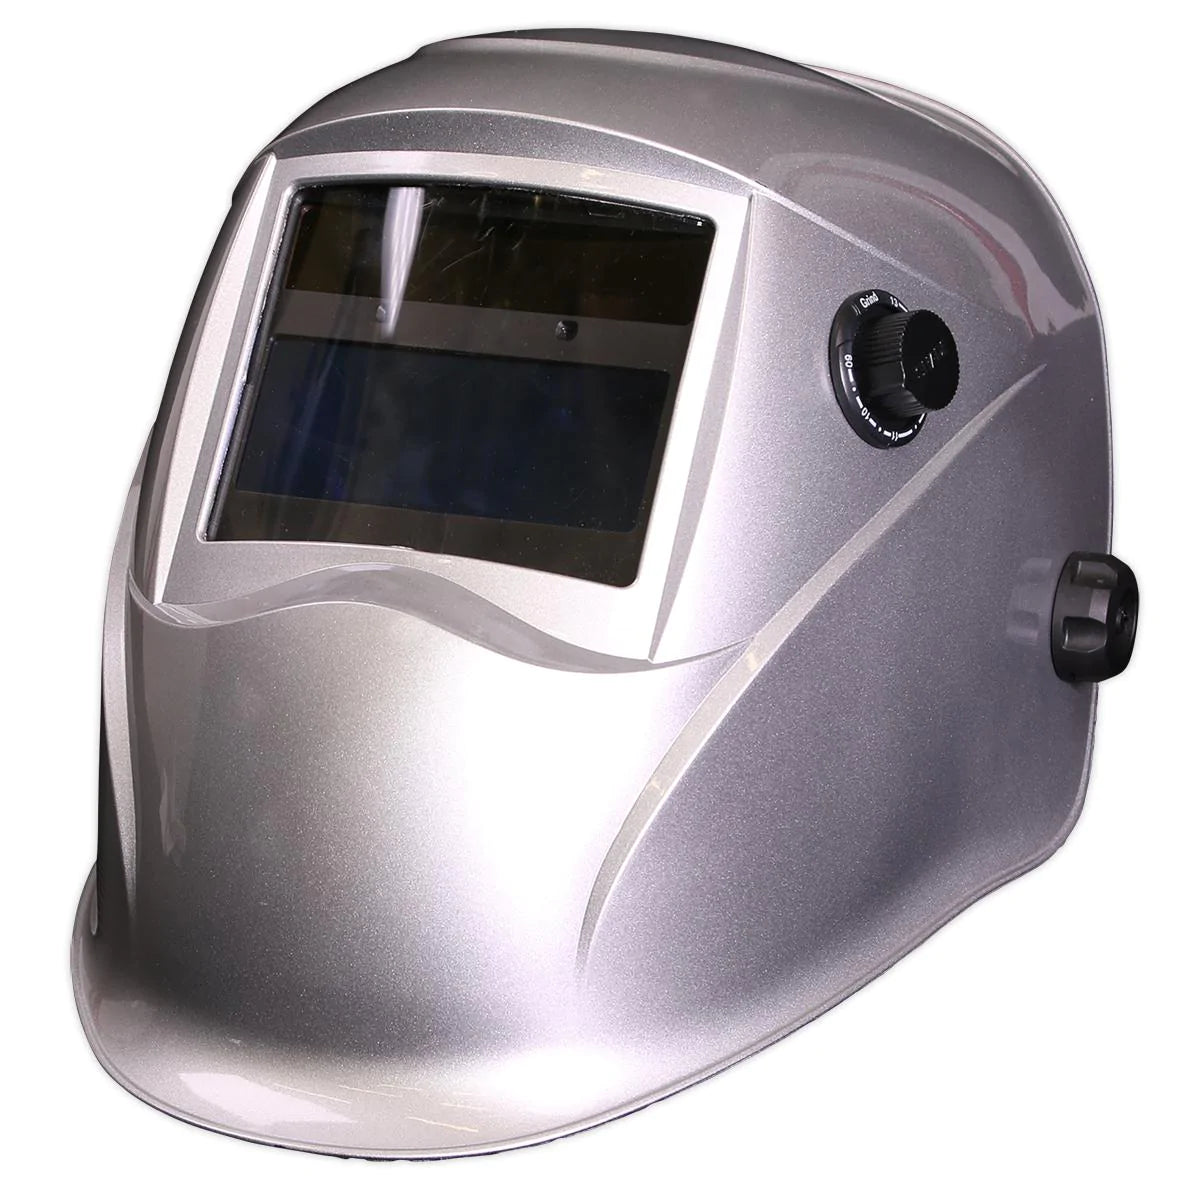 Welding Helmet Auto Darkening - Shade 9-13 - Silver